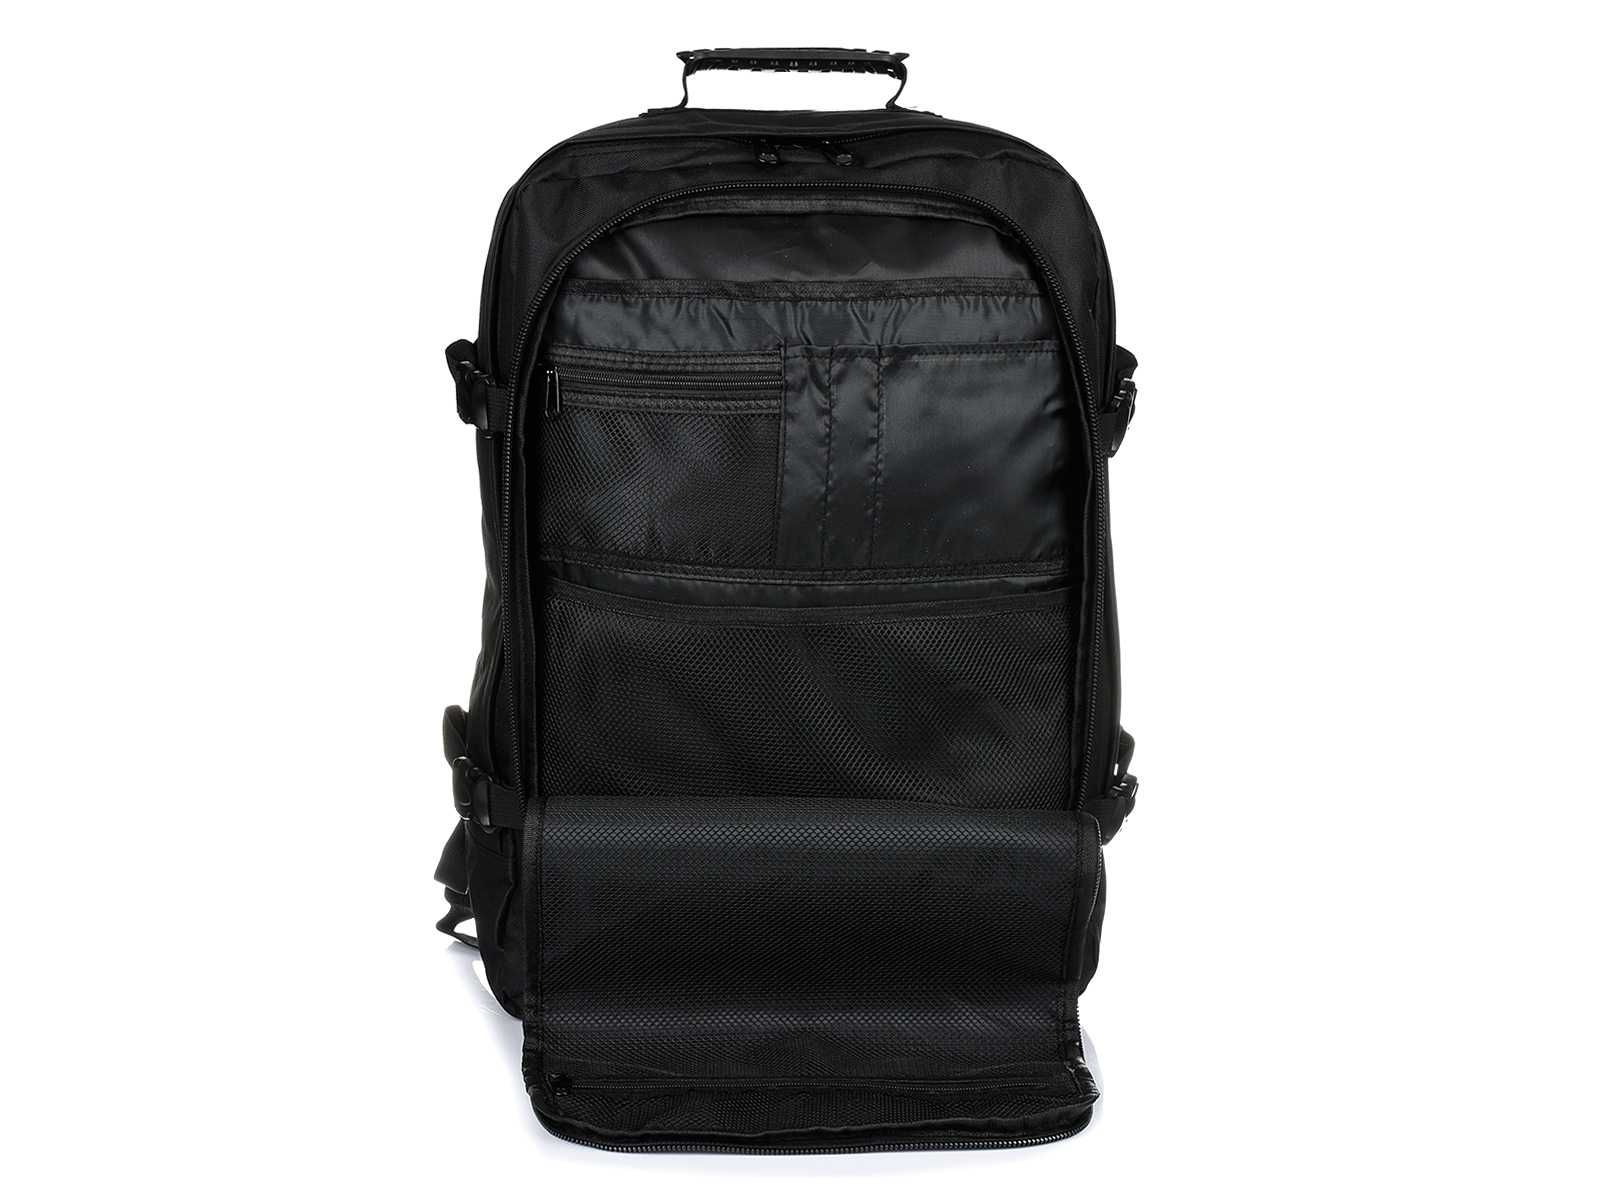 Czarny plecak podróżny, plecak sportowy, bagaż podręczy do samolotu